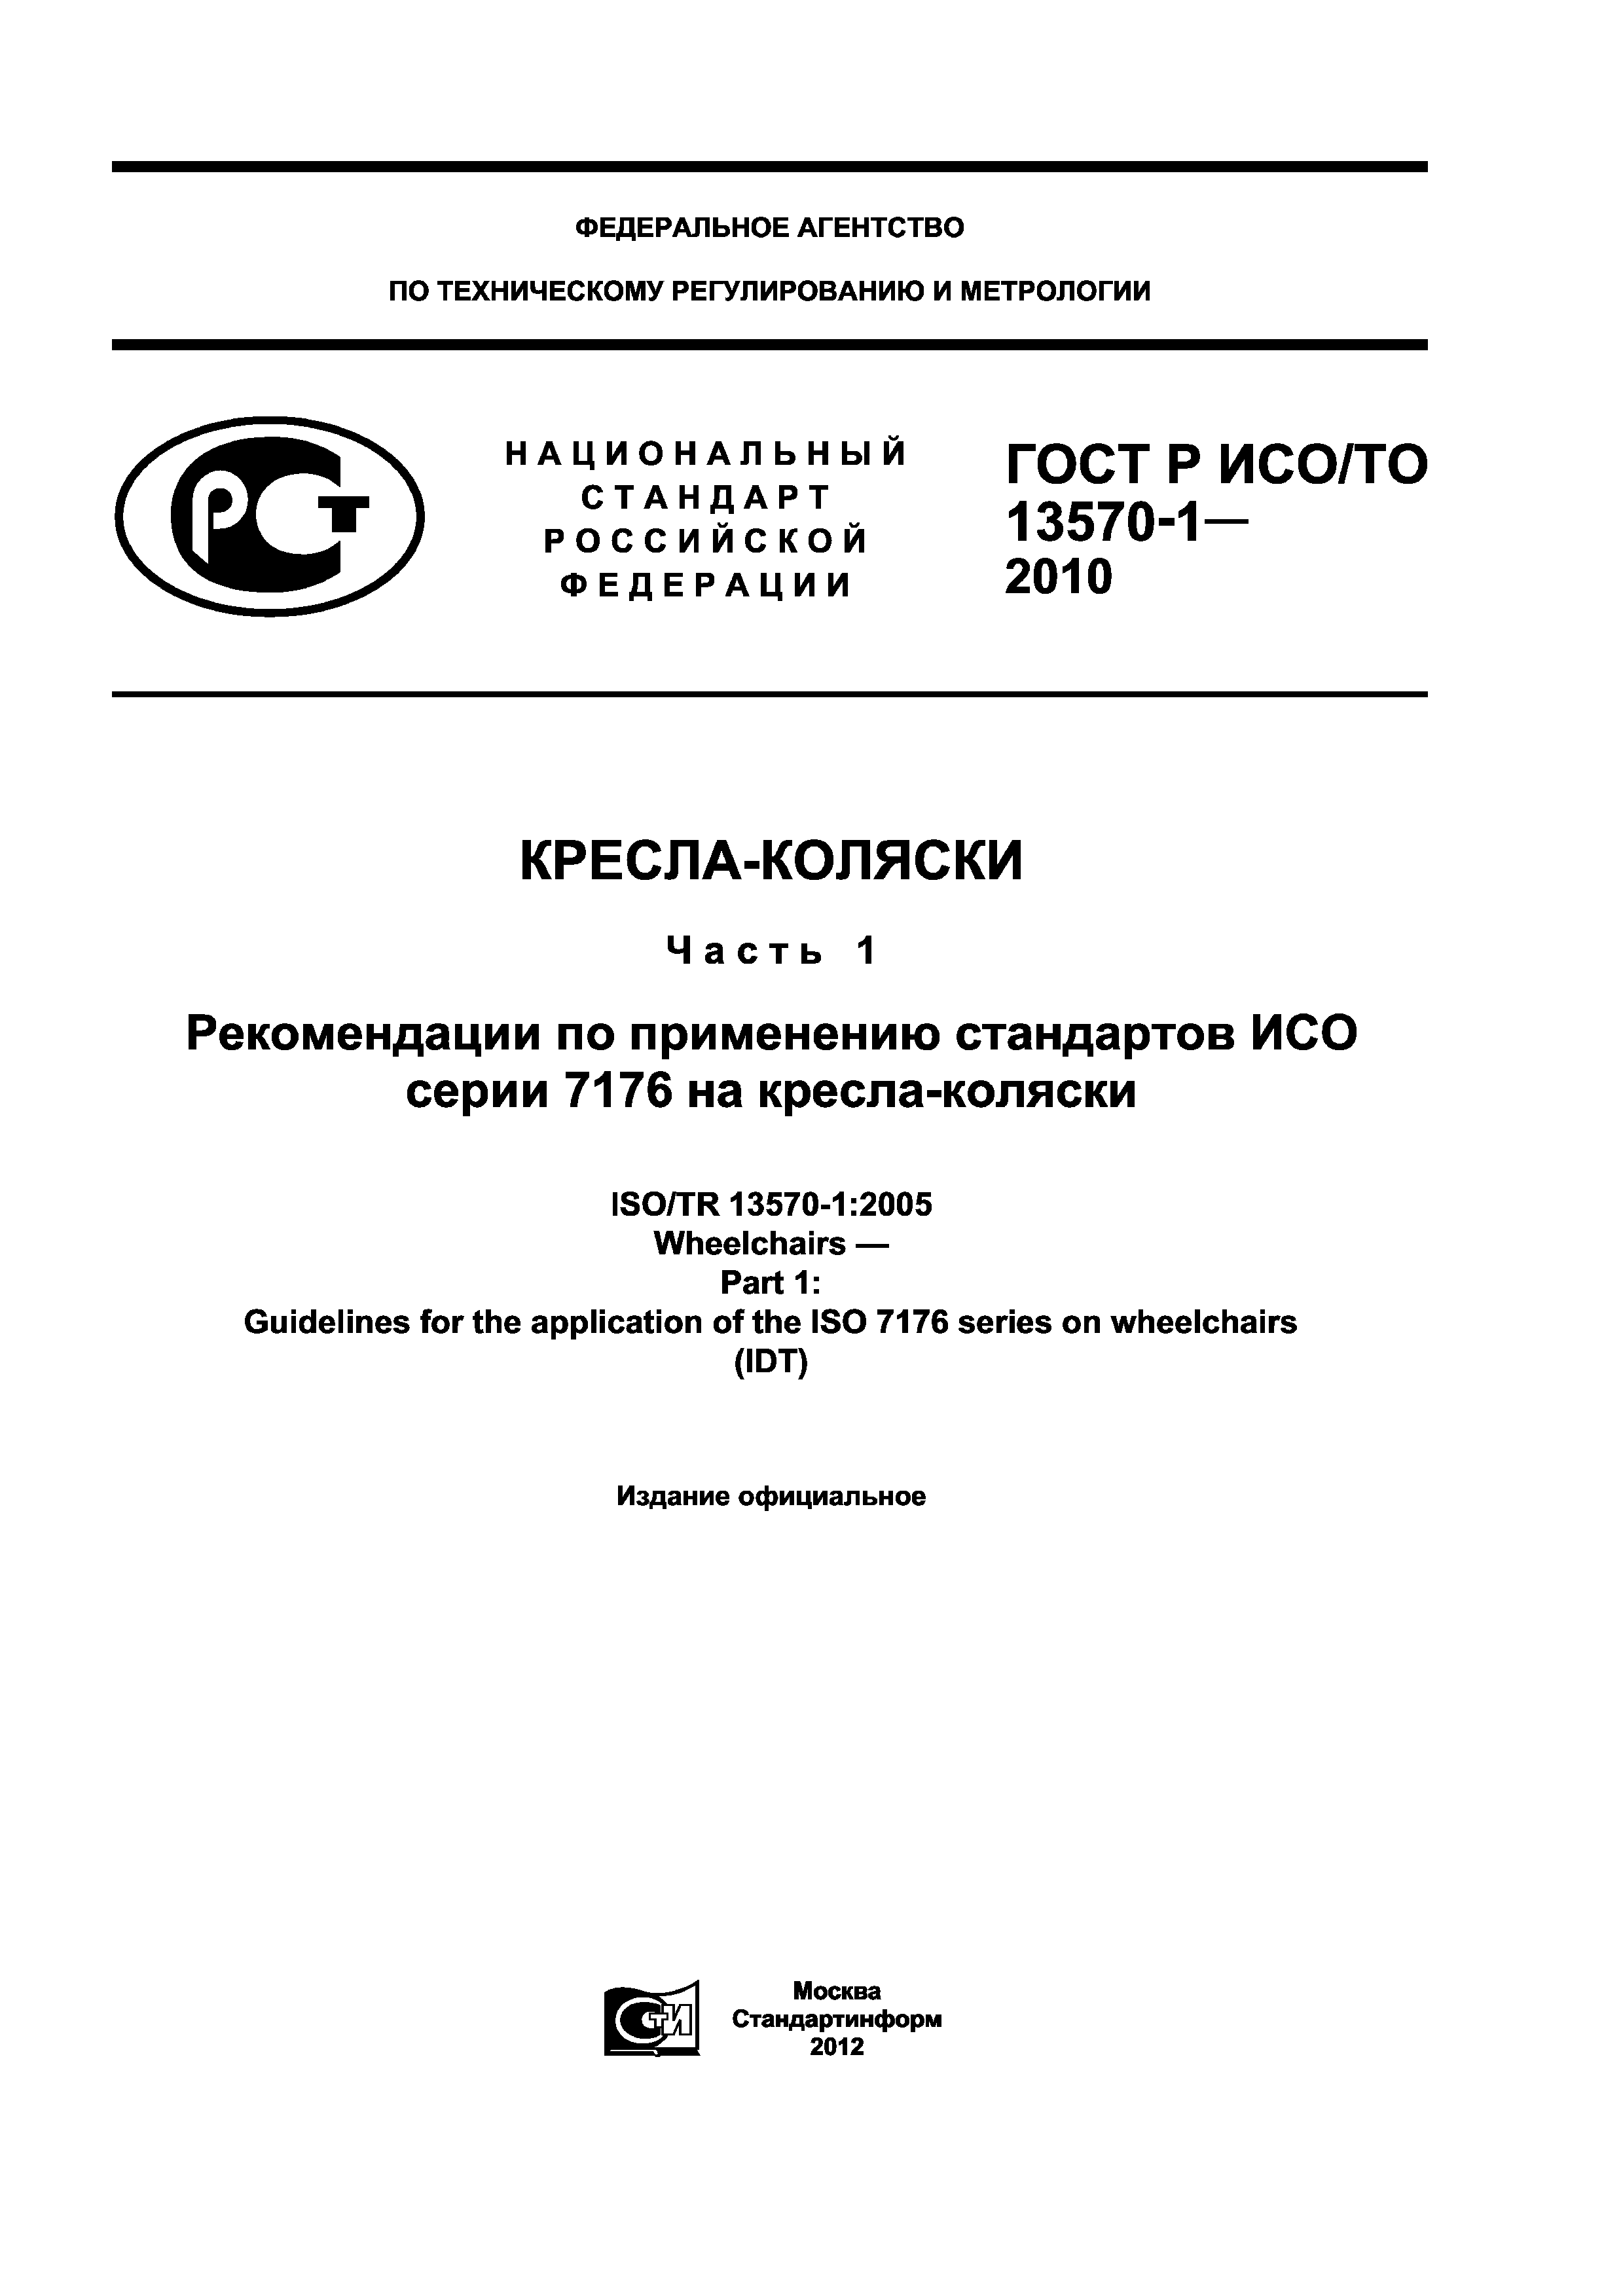 ГОСТ Р ИСО/ТО 13570-1-2010